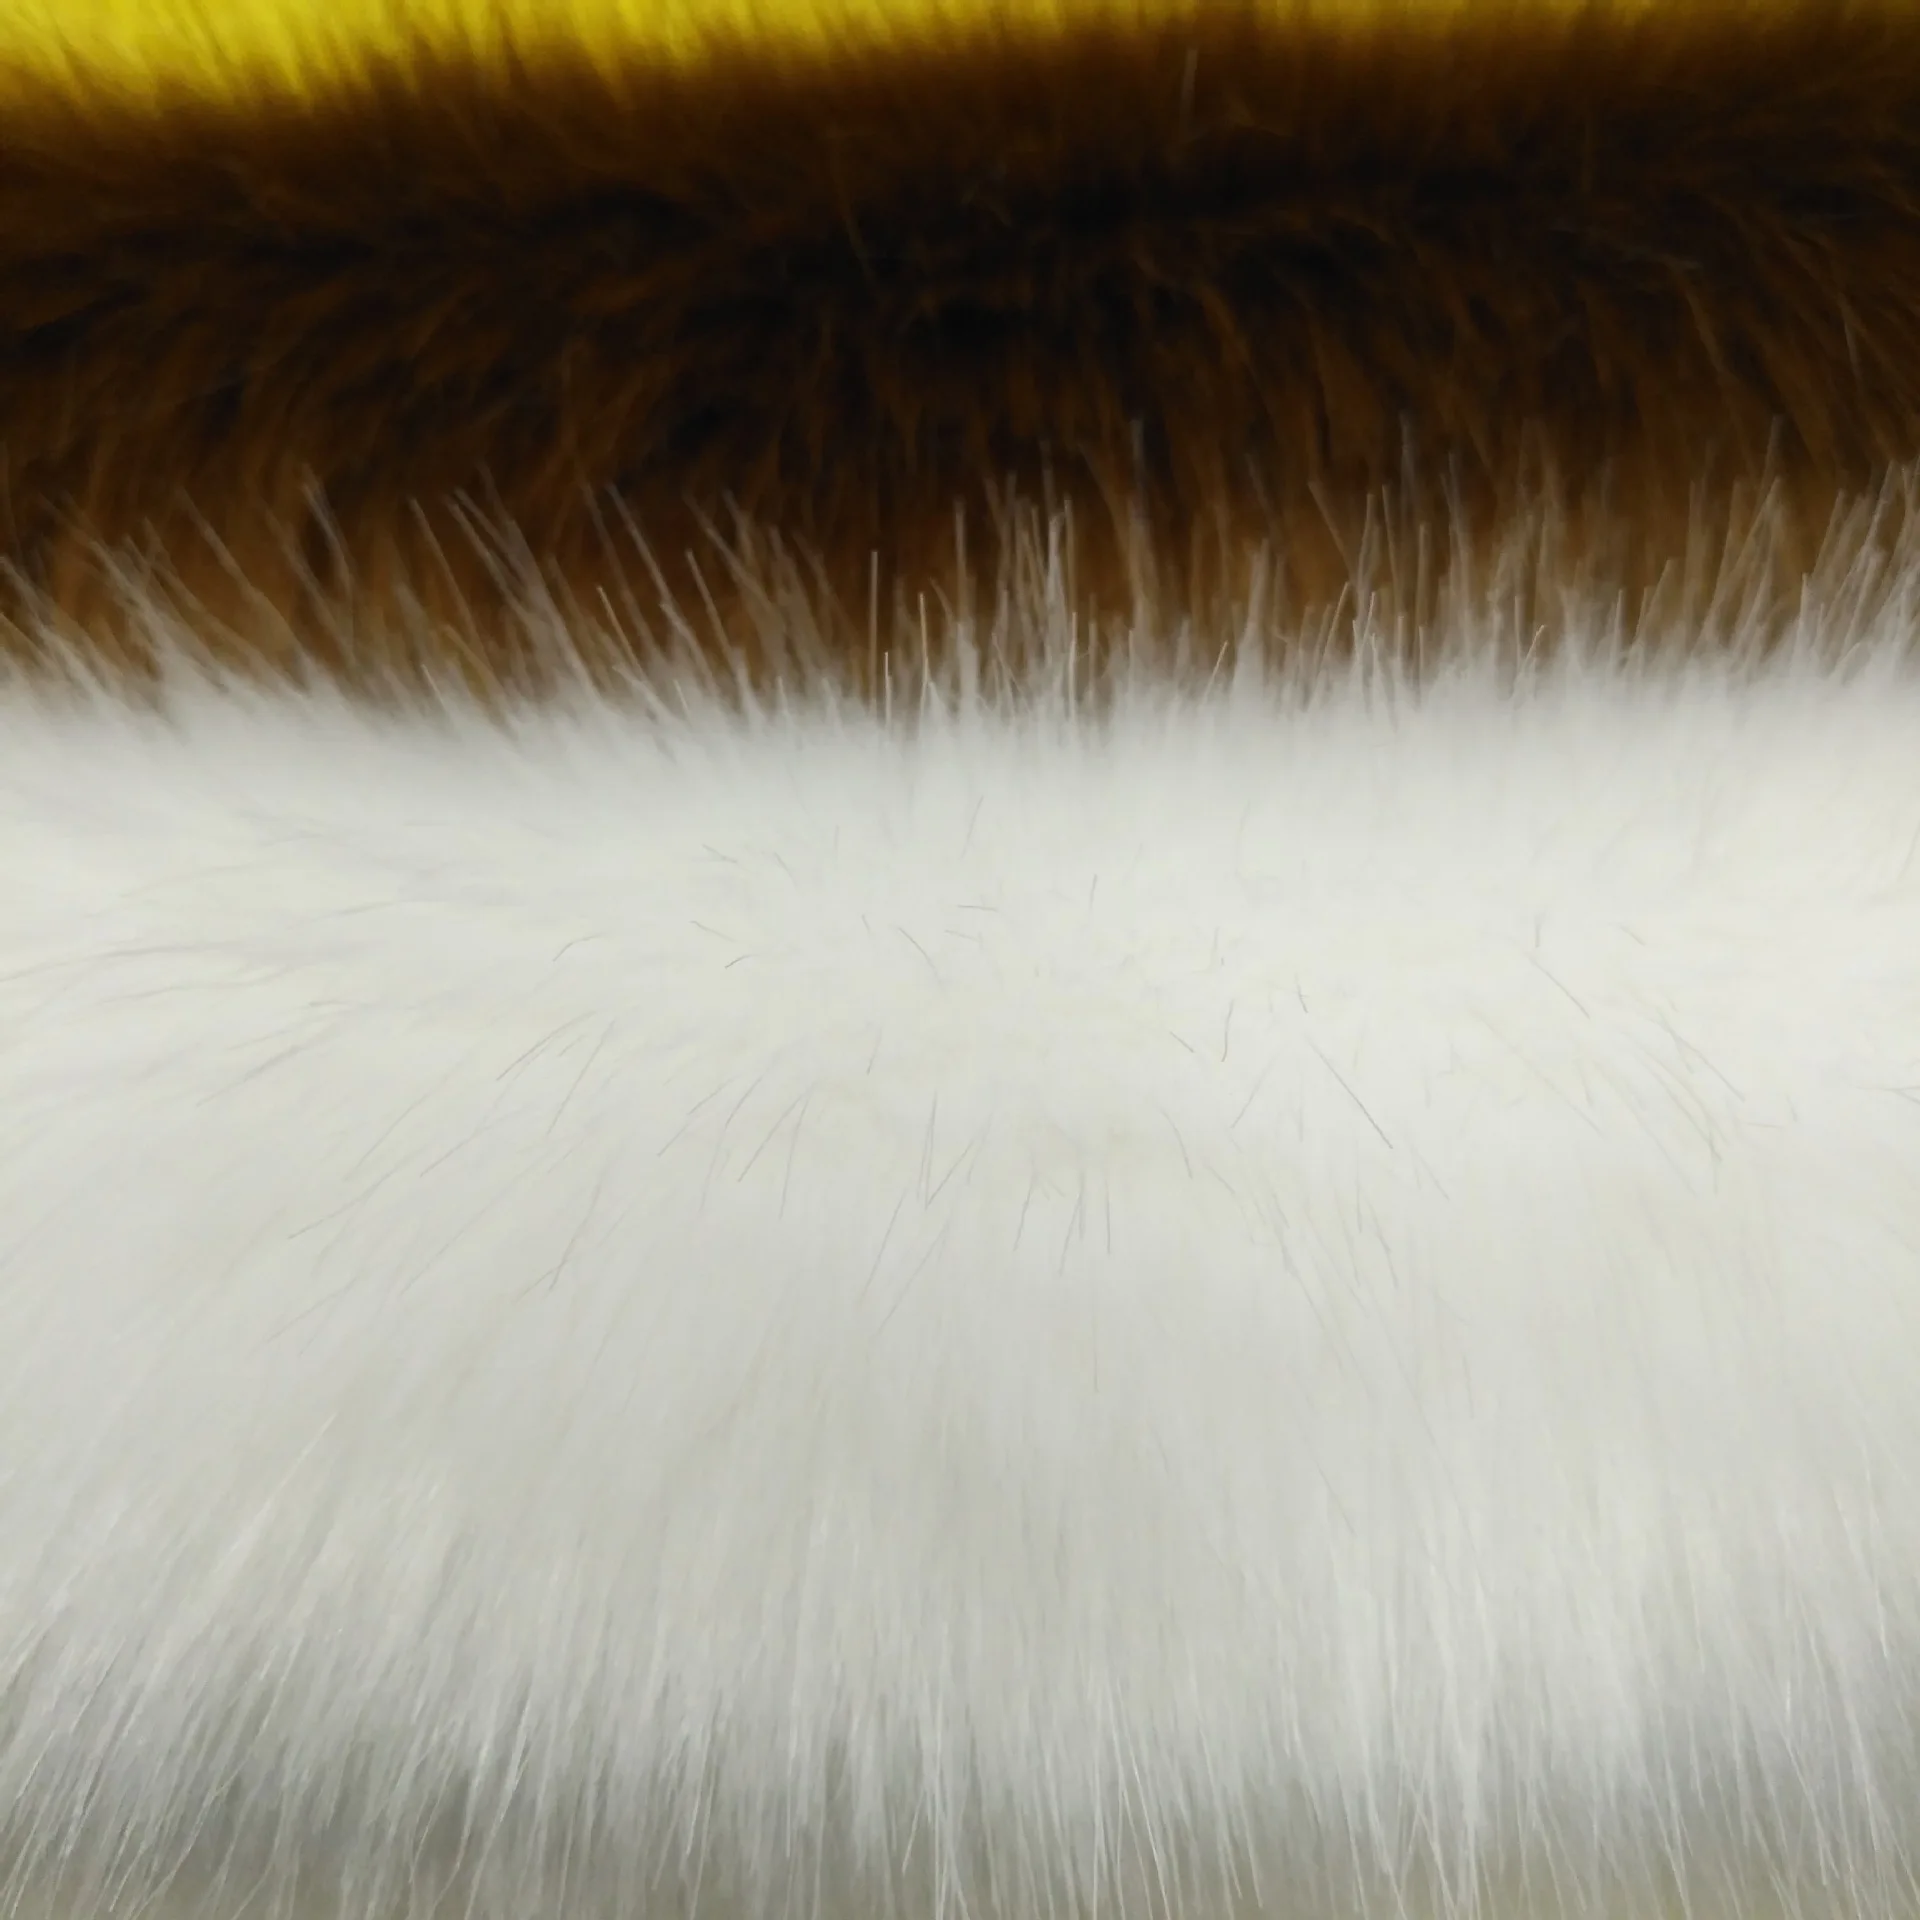 Off-the-shelf 35 цветов лисий мех трава 45 мм плюшевая ткань искусственный мех одежда пальто ткань